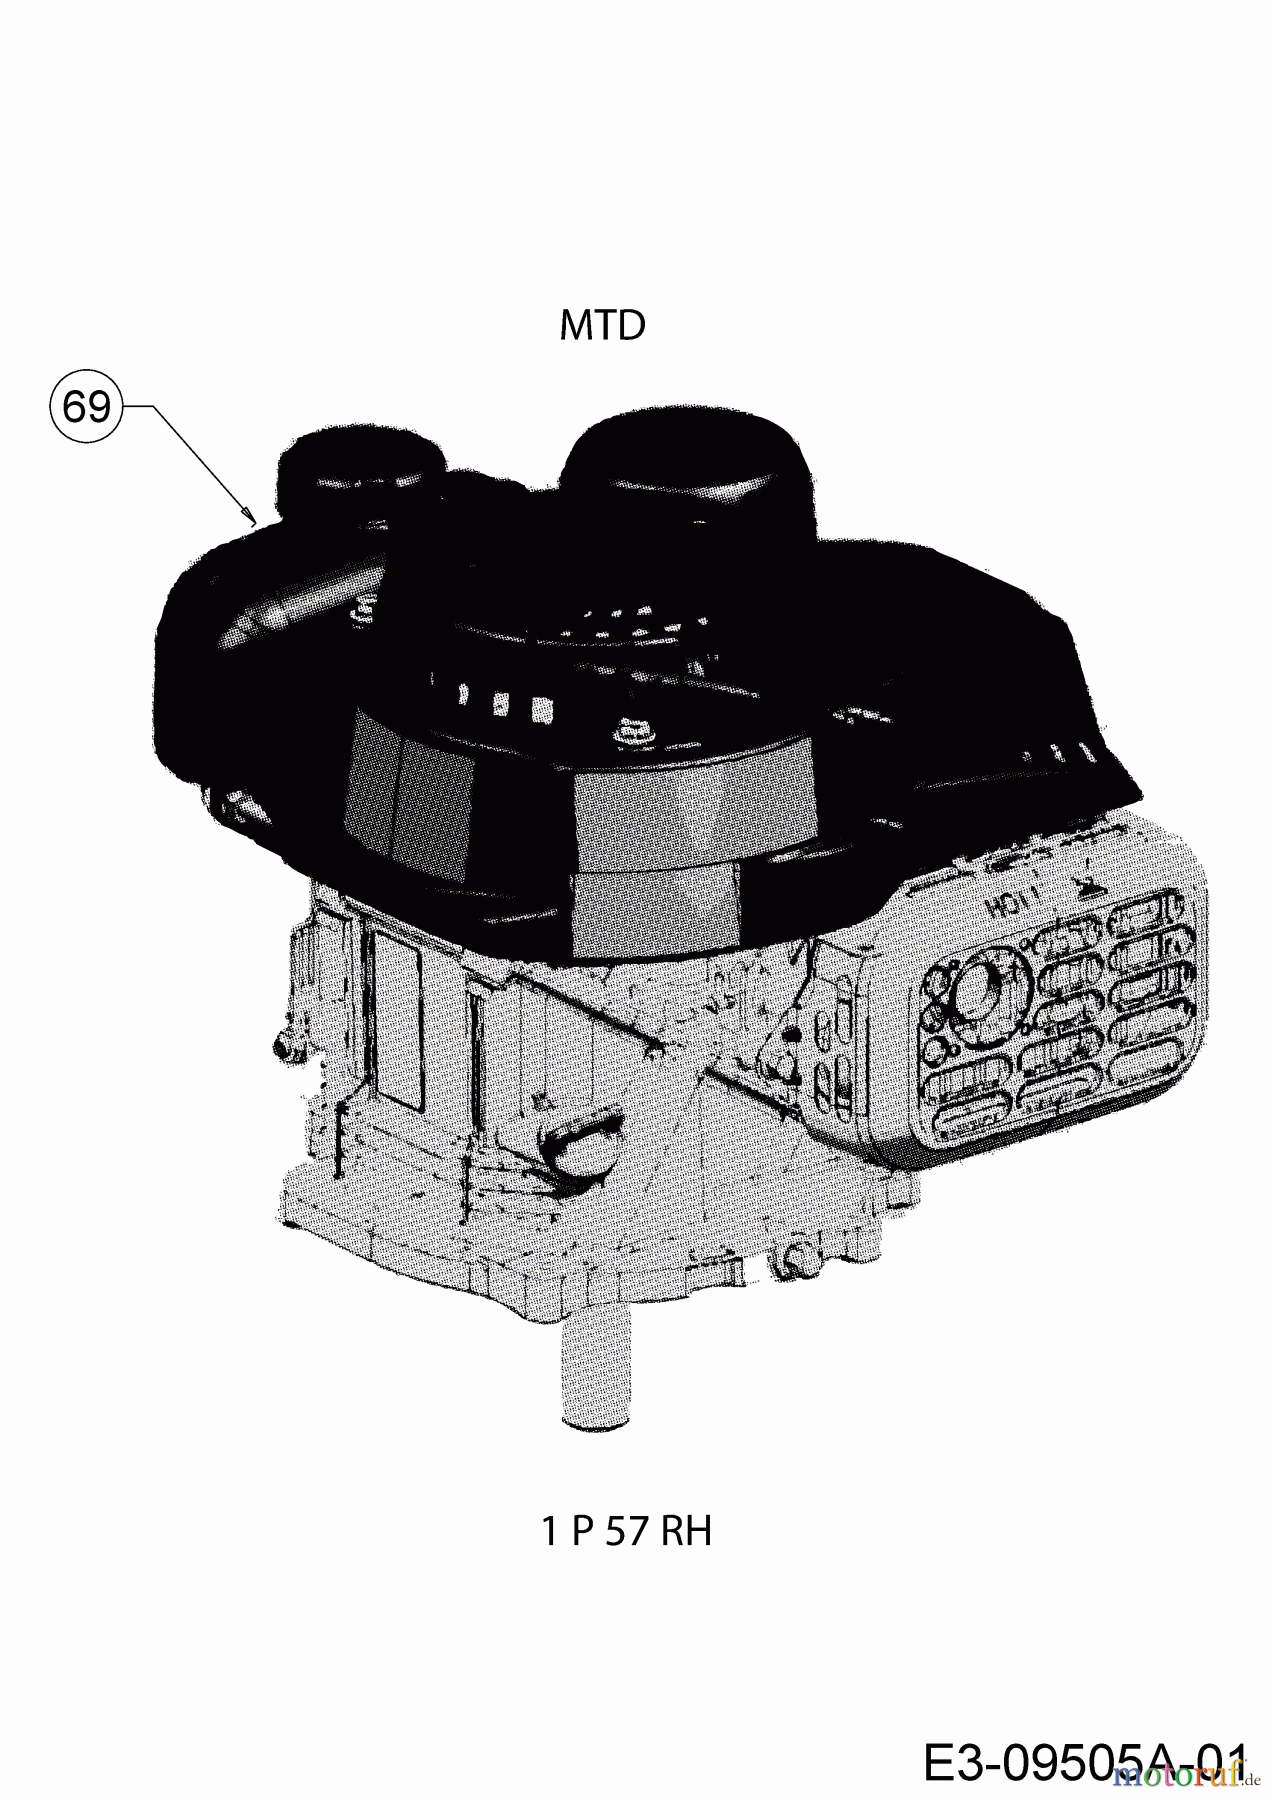  MTD Petrol mower Smart 46 PO 11C-TASJ600  (2018) Engine MTD